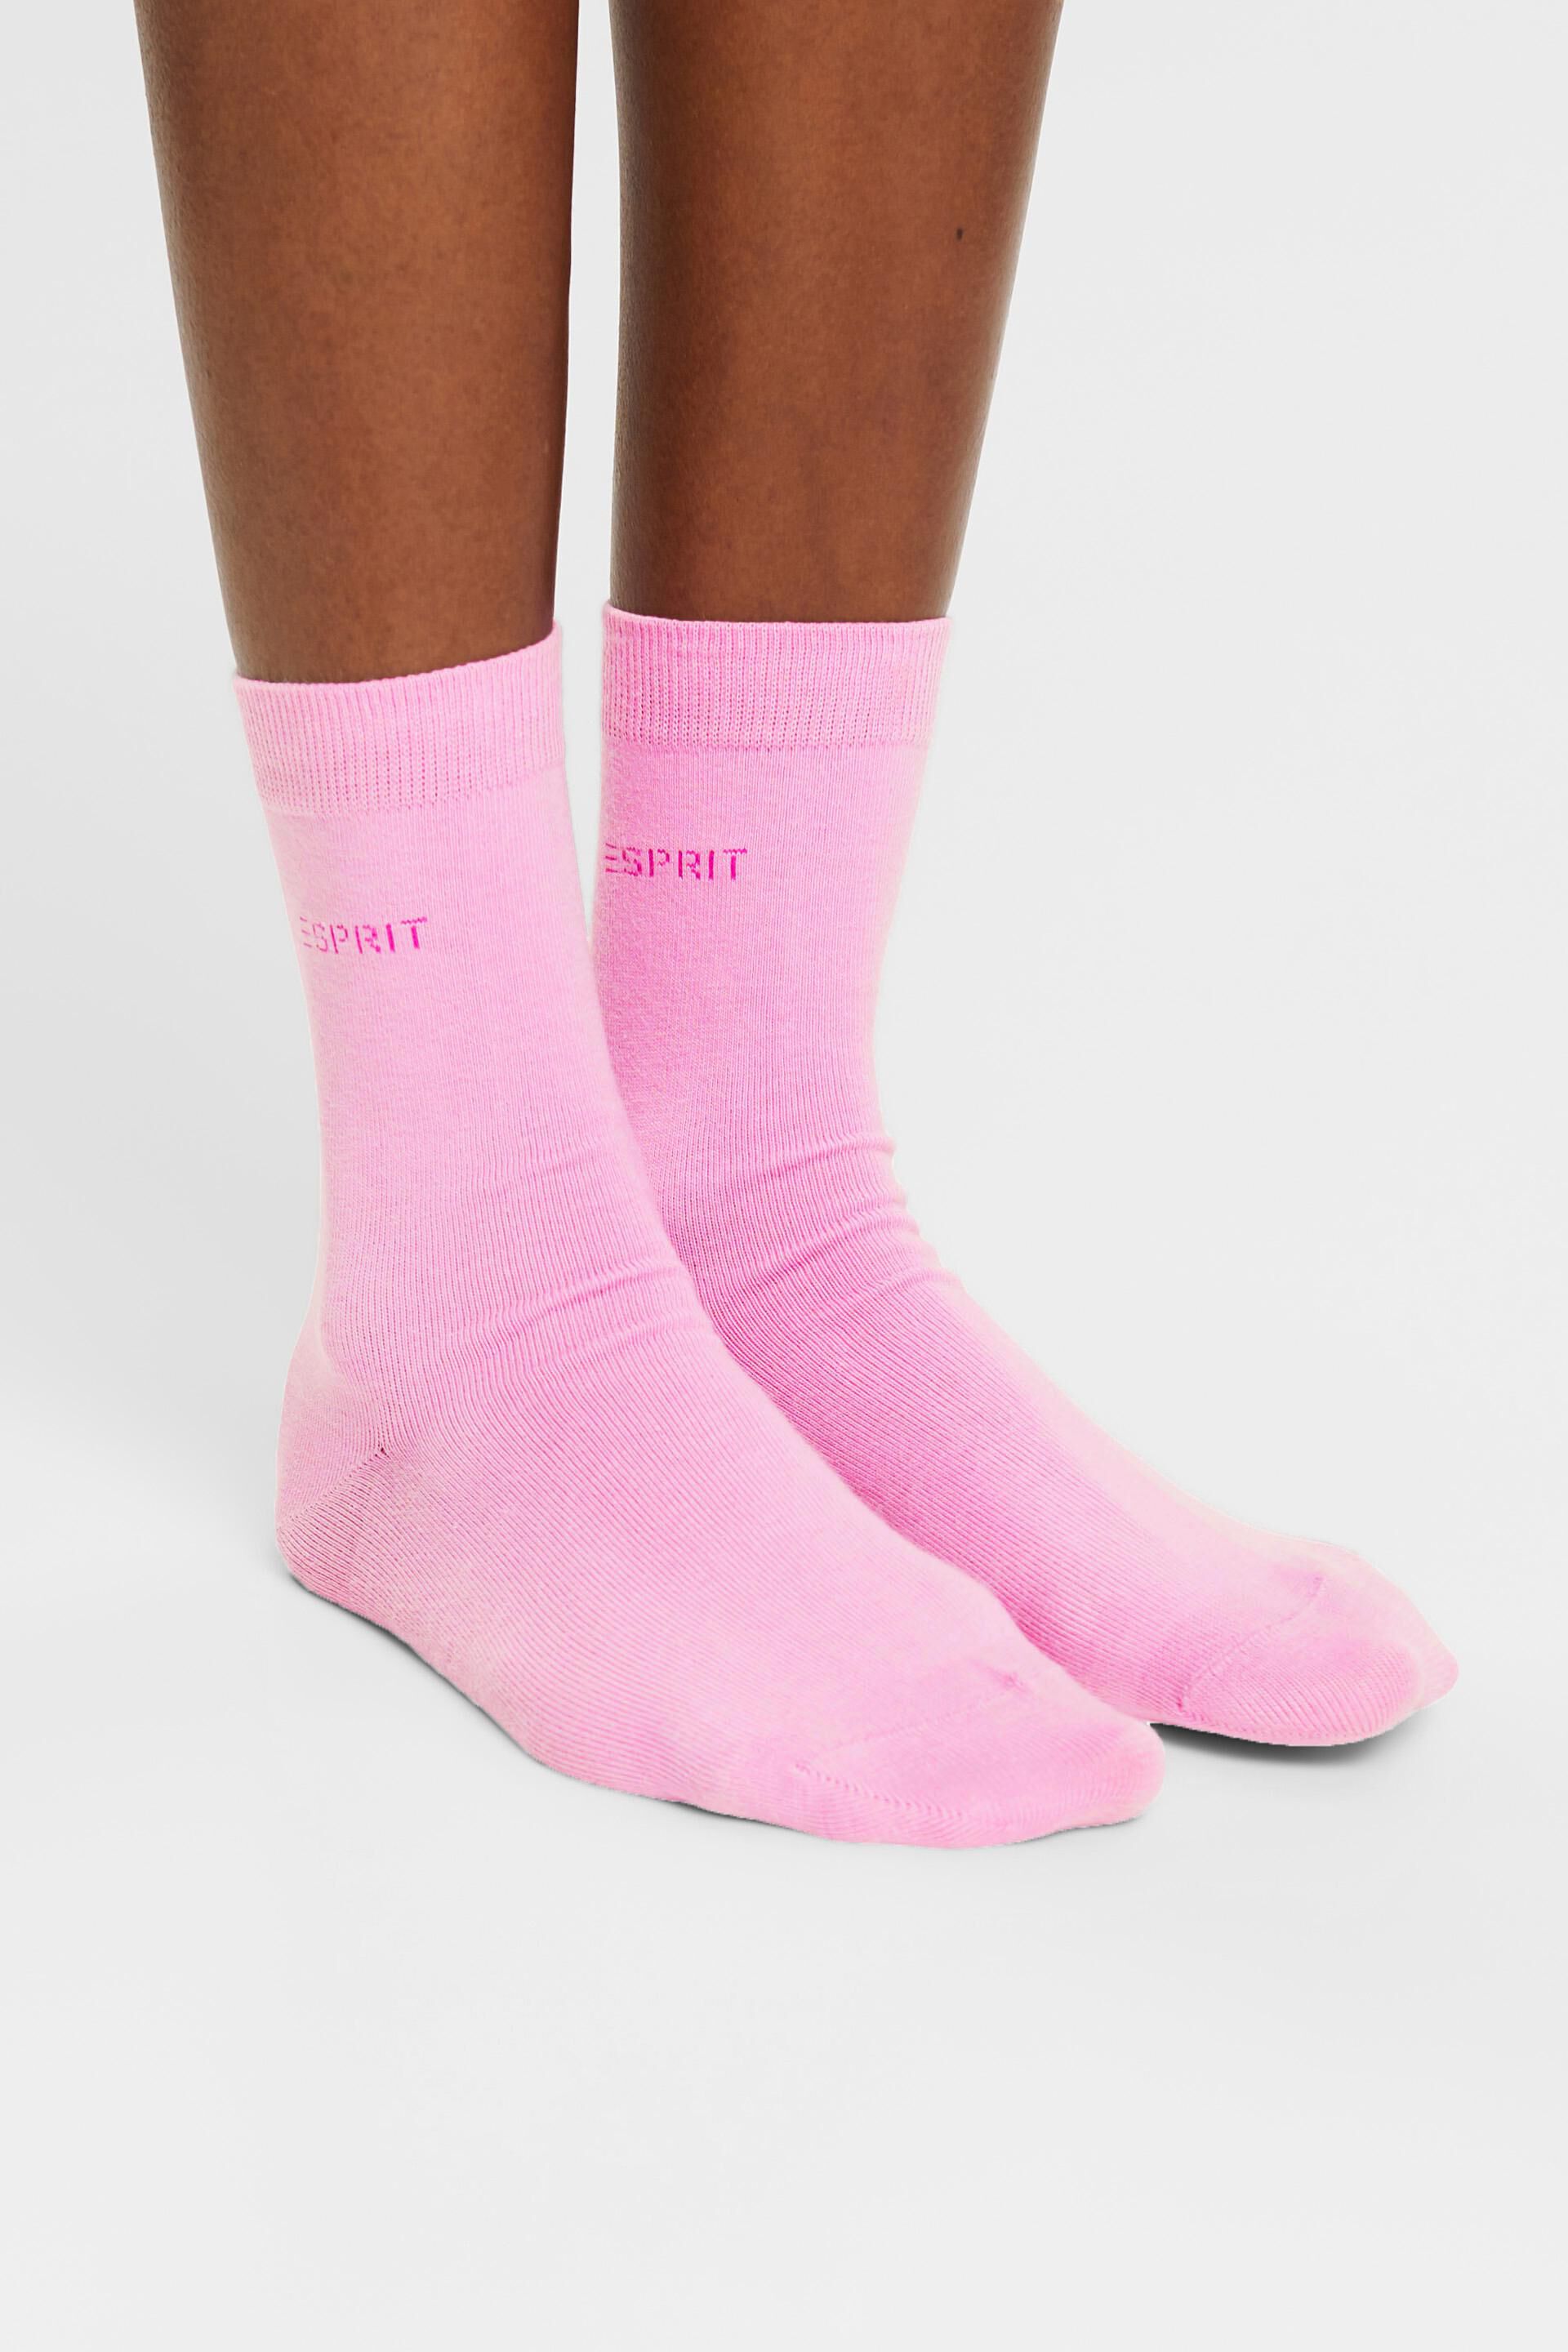 Esprit Online Store 2er-Pack Socken mit gestricktem Logo, Bio-Baumwolle